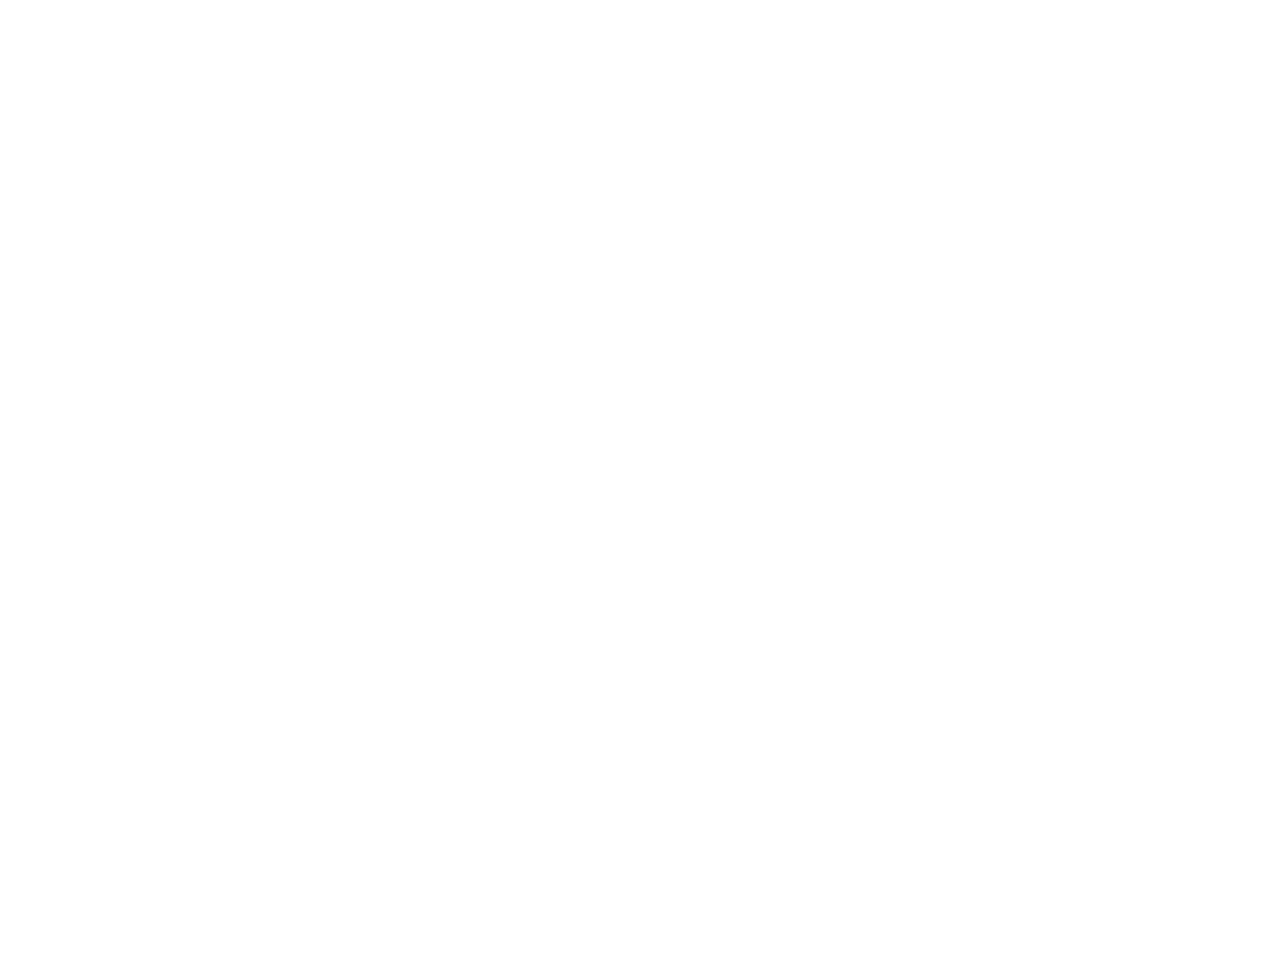 Декоративные вставки для ширмы «Тверской бульвар» (фрагменты). Москва, 1924 год. Дерево, роспись, лак. Экспонат Парижской выставки 1925 года.